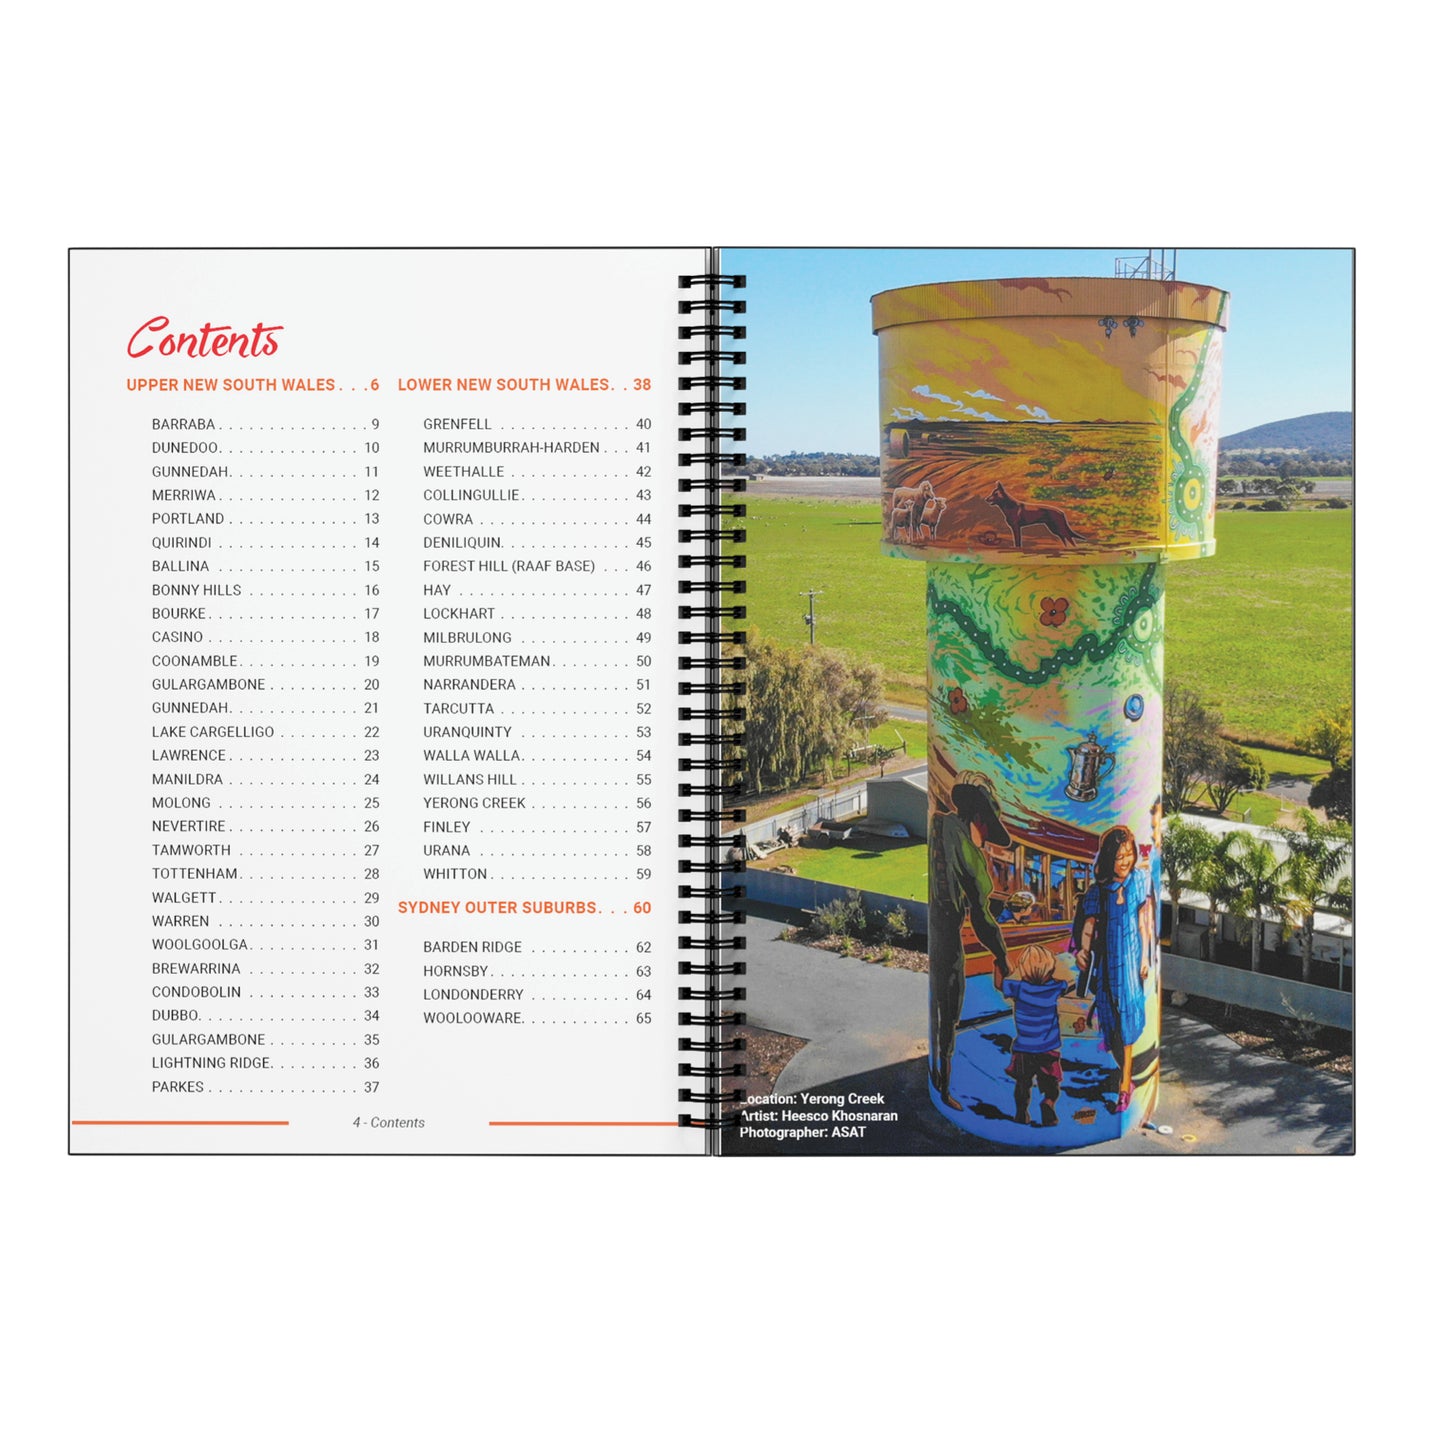 NSW Silo & Water Tower Art Regional Guide